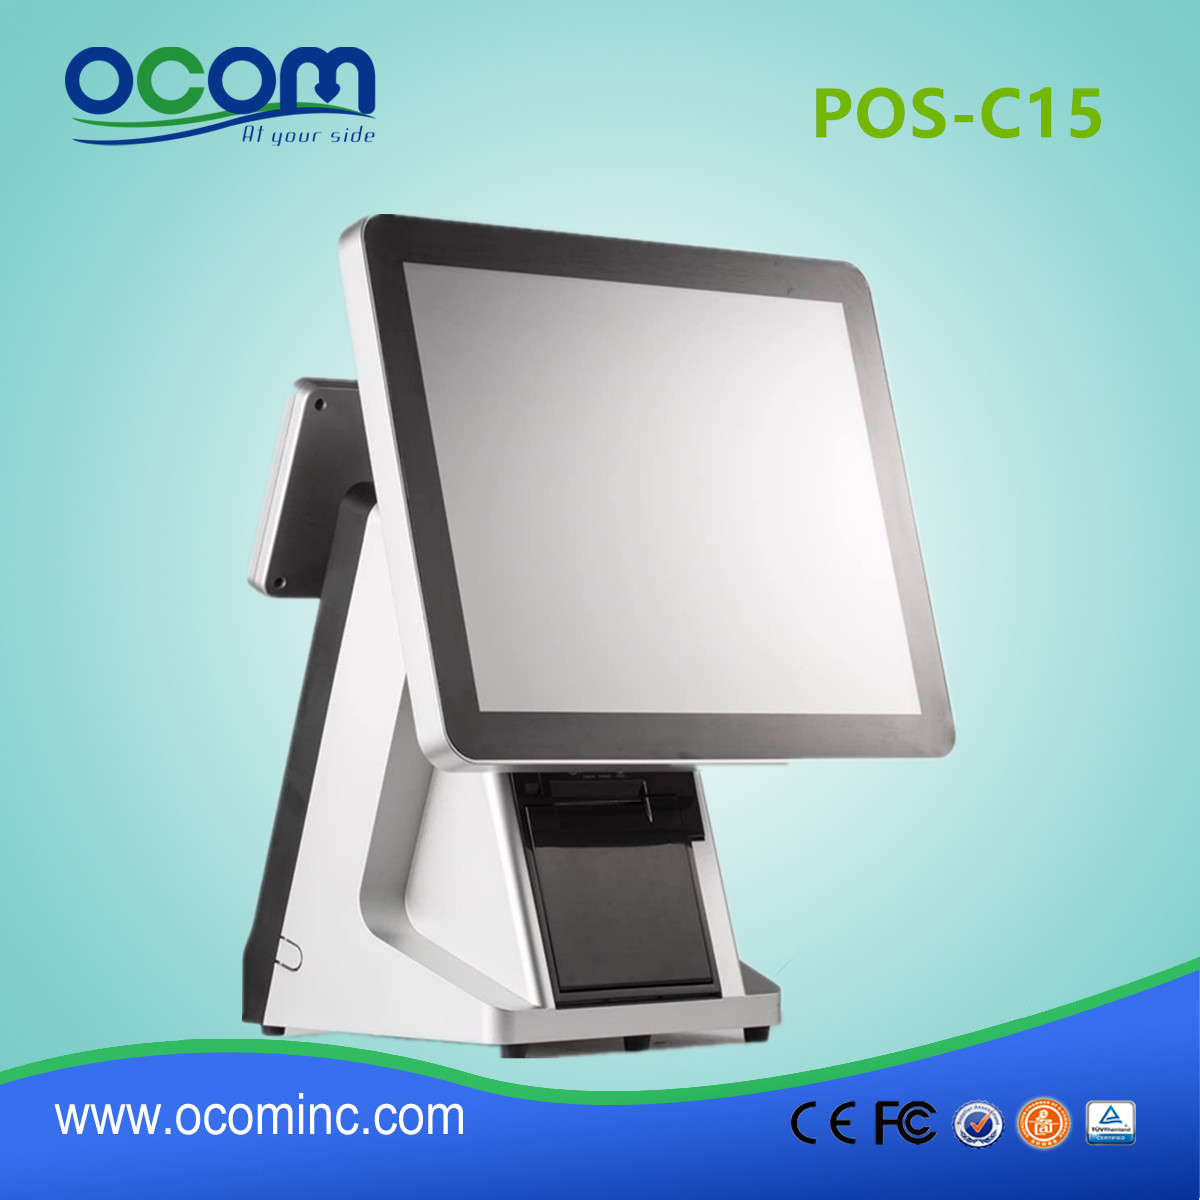 POS-C15-15 pouces machine à écran tactile POS avec imprimante thermique intégrée